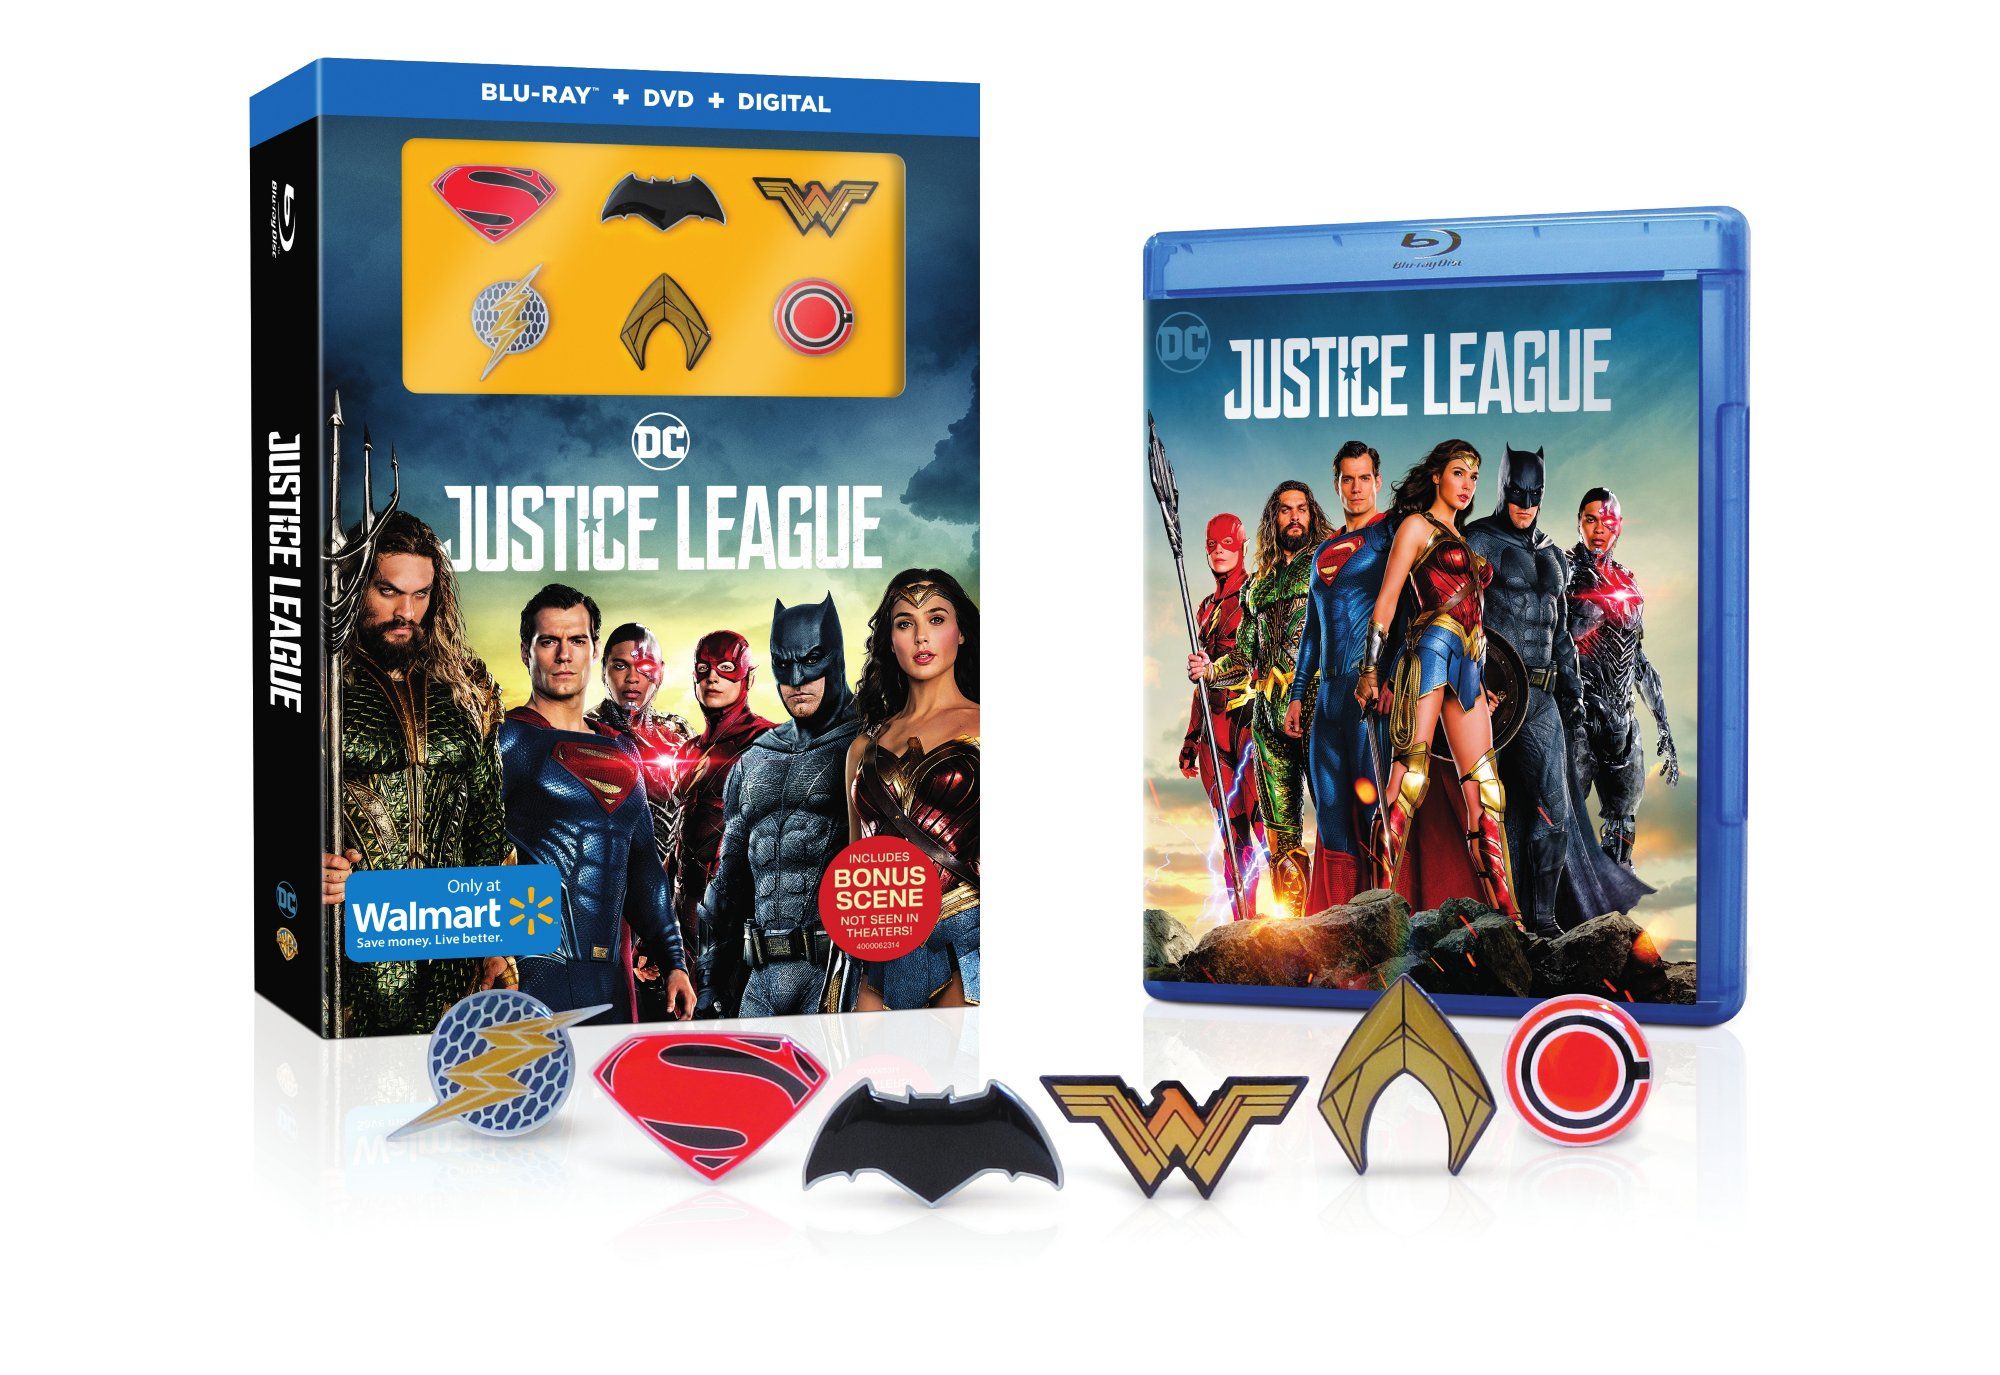 Blu-ray da Liga da Justiça apresenta cena bônus não exibida nos cinemas